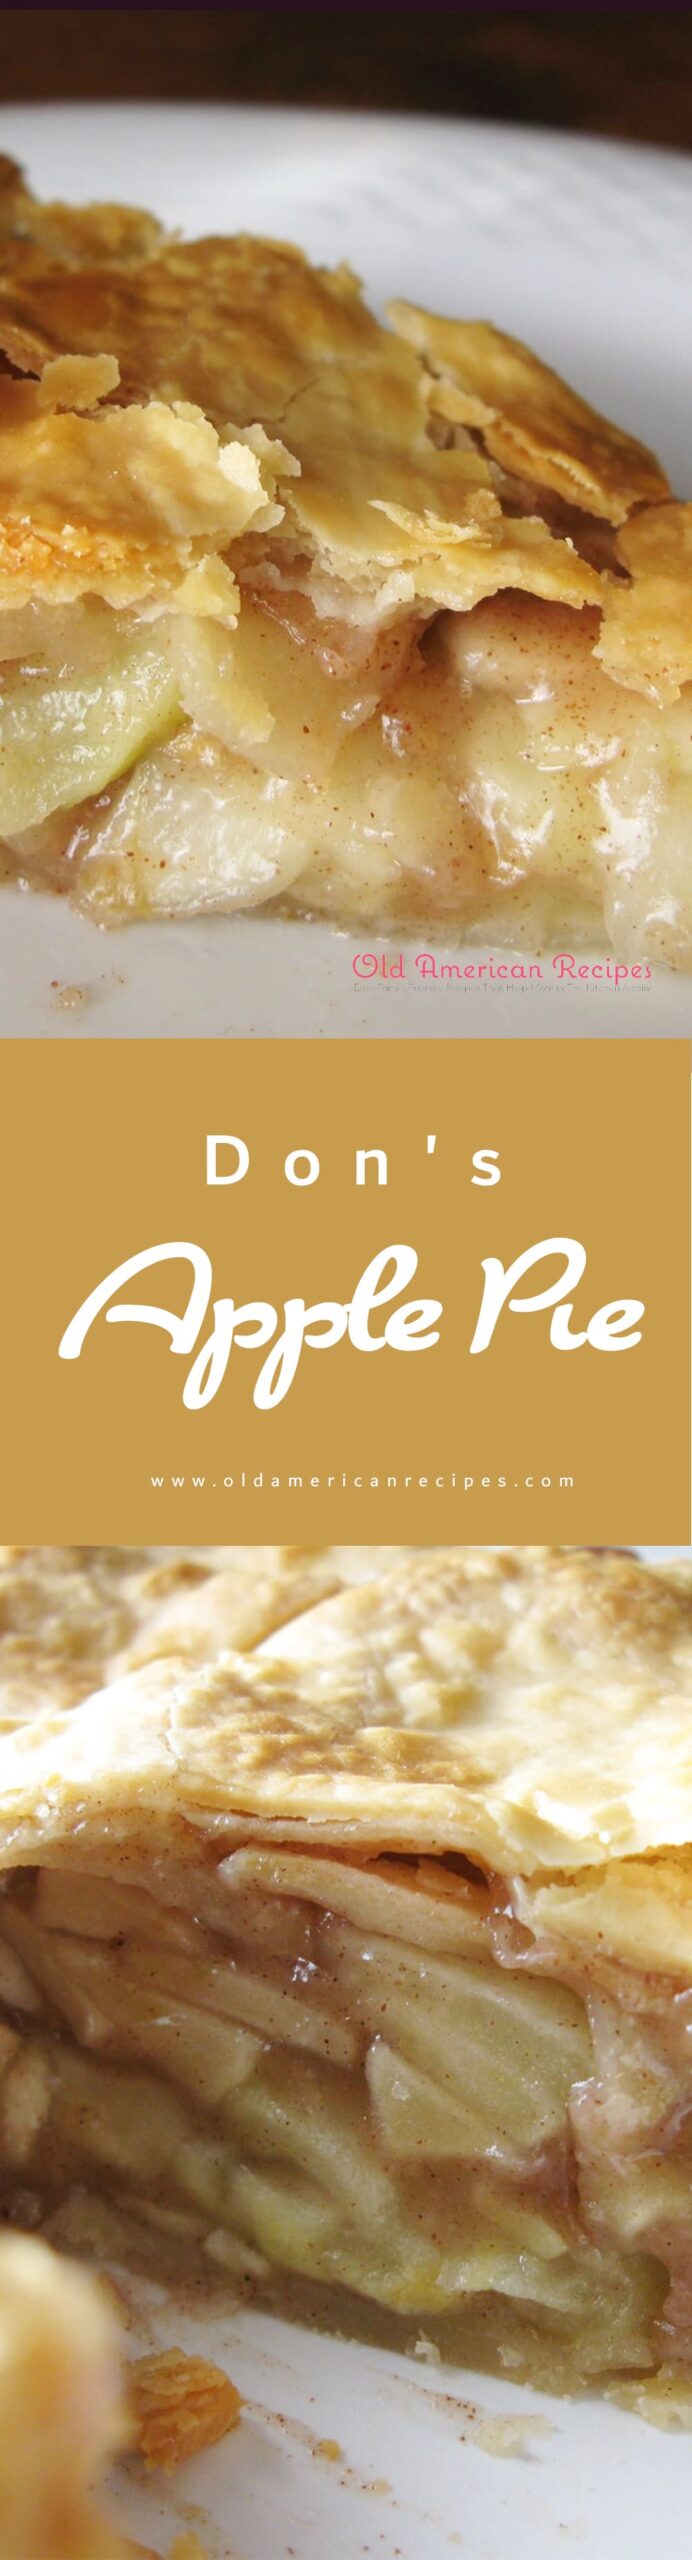 Don's Apple Pie